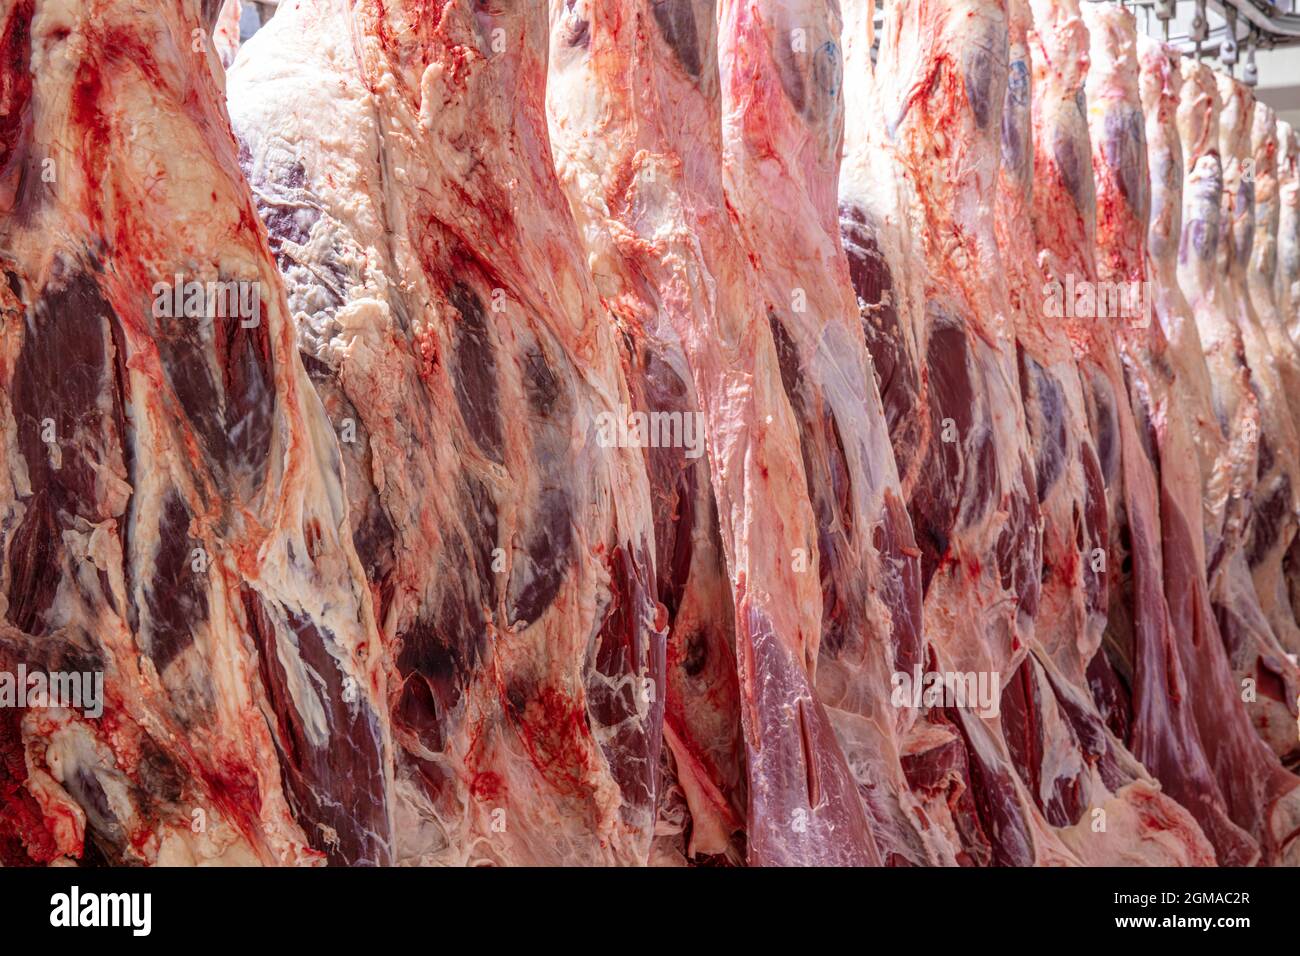 À l'abattoir, les carcasses, la viande de bœuf cru, accrochée au congélateur.  Gros plan d'une moitié de morceaux de vache frais accrochés et disposés en  rangée dans un grand frid Photo Stock -